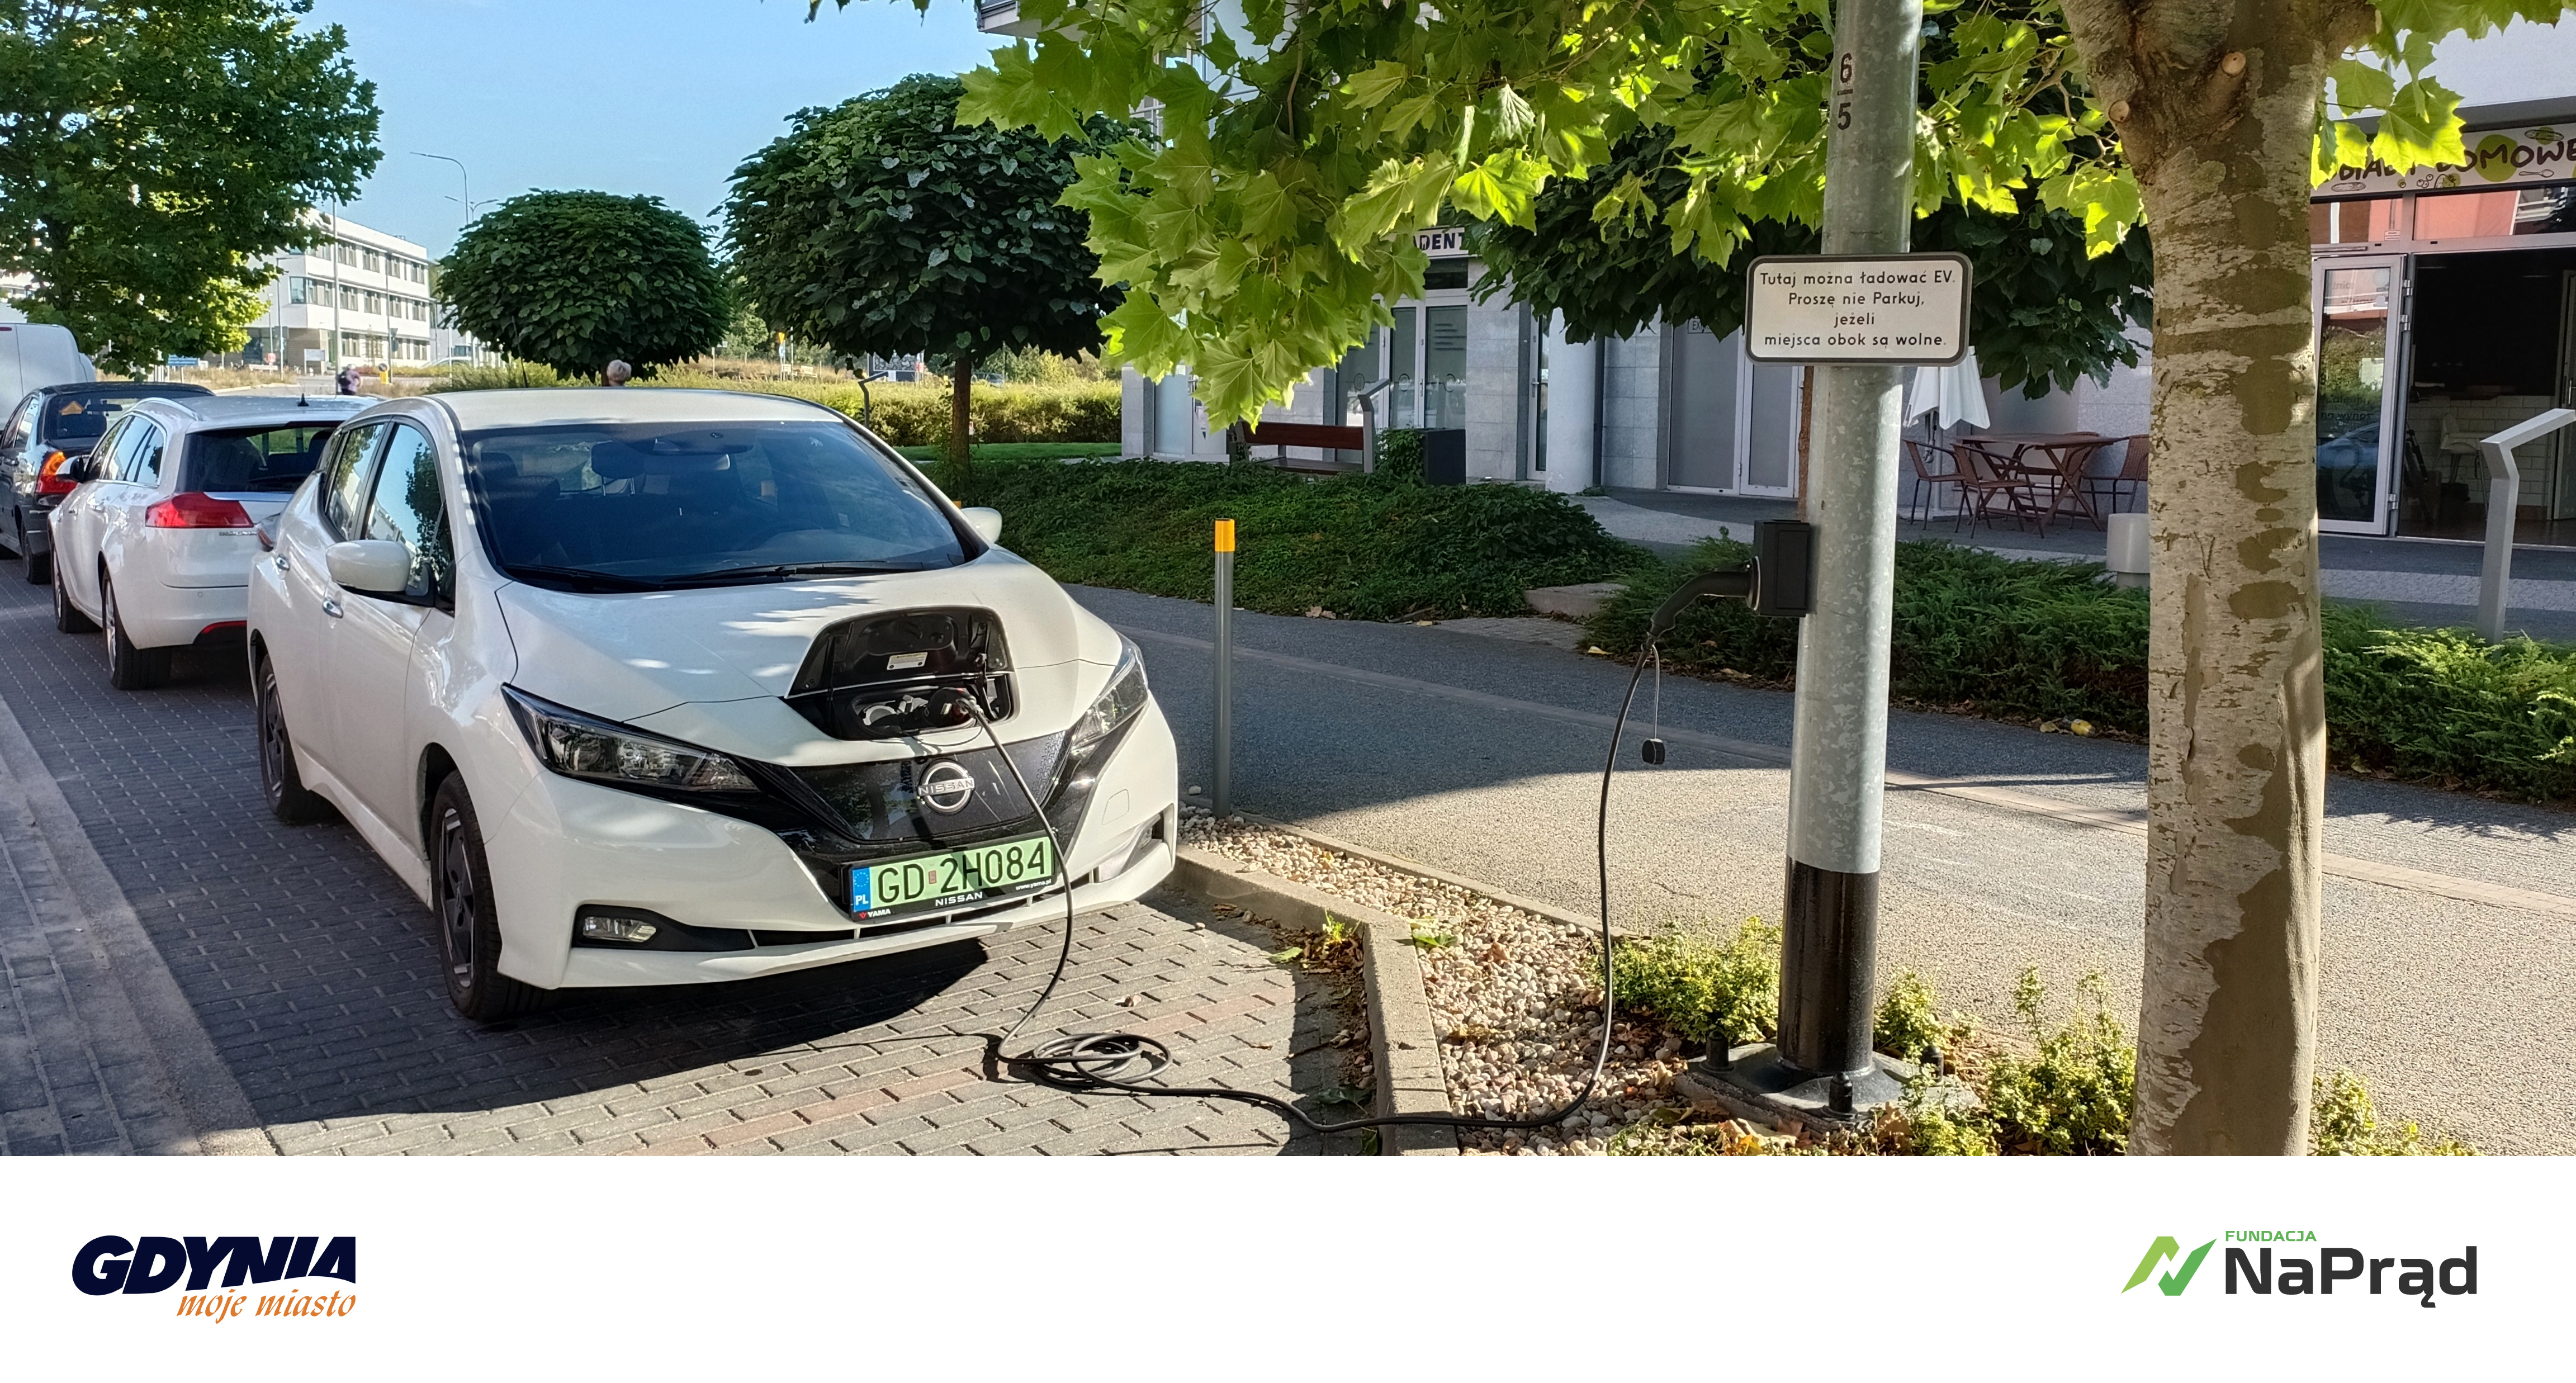 „Electric Street” - wspólny projekt miasta Gdynia i Fundacji #NaPrąd. Zdjęcie samochodu elektrycznego w zatoczce, podłączony kablem do słupa oświetleniowego. Obok inne samochody, ulica, budynki